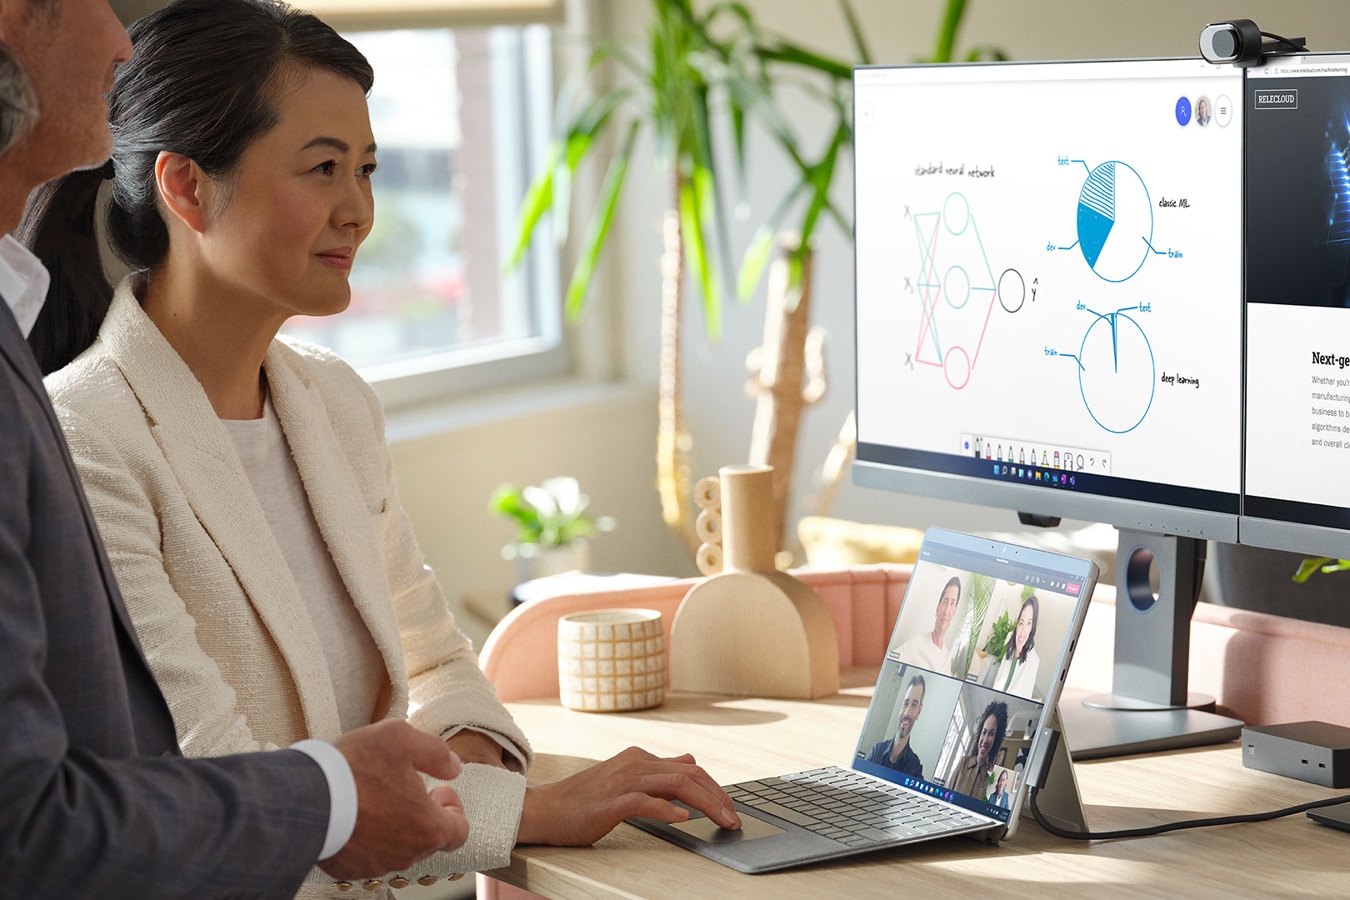 Mies ja nainen käyttävät toimistossa Surface-laitetta, johon on kytketty kaksi ulkoista näyttöä Microsoft Teams -kokousta varten